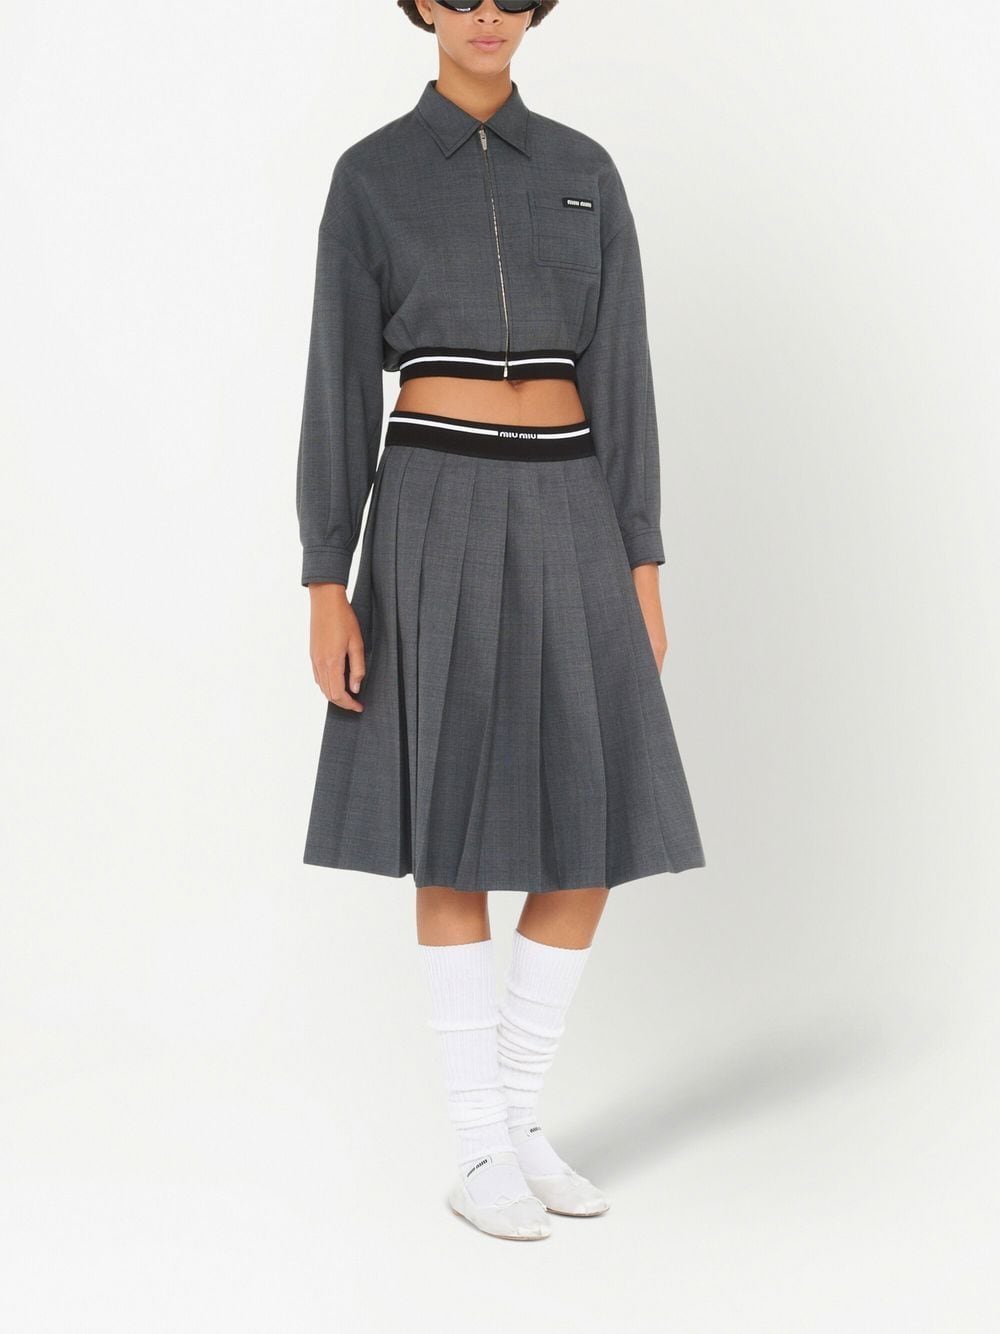 Miu Miu check-print Pleated Wool Skirt - Farfetch